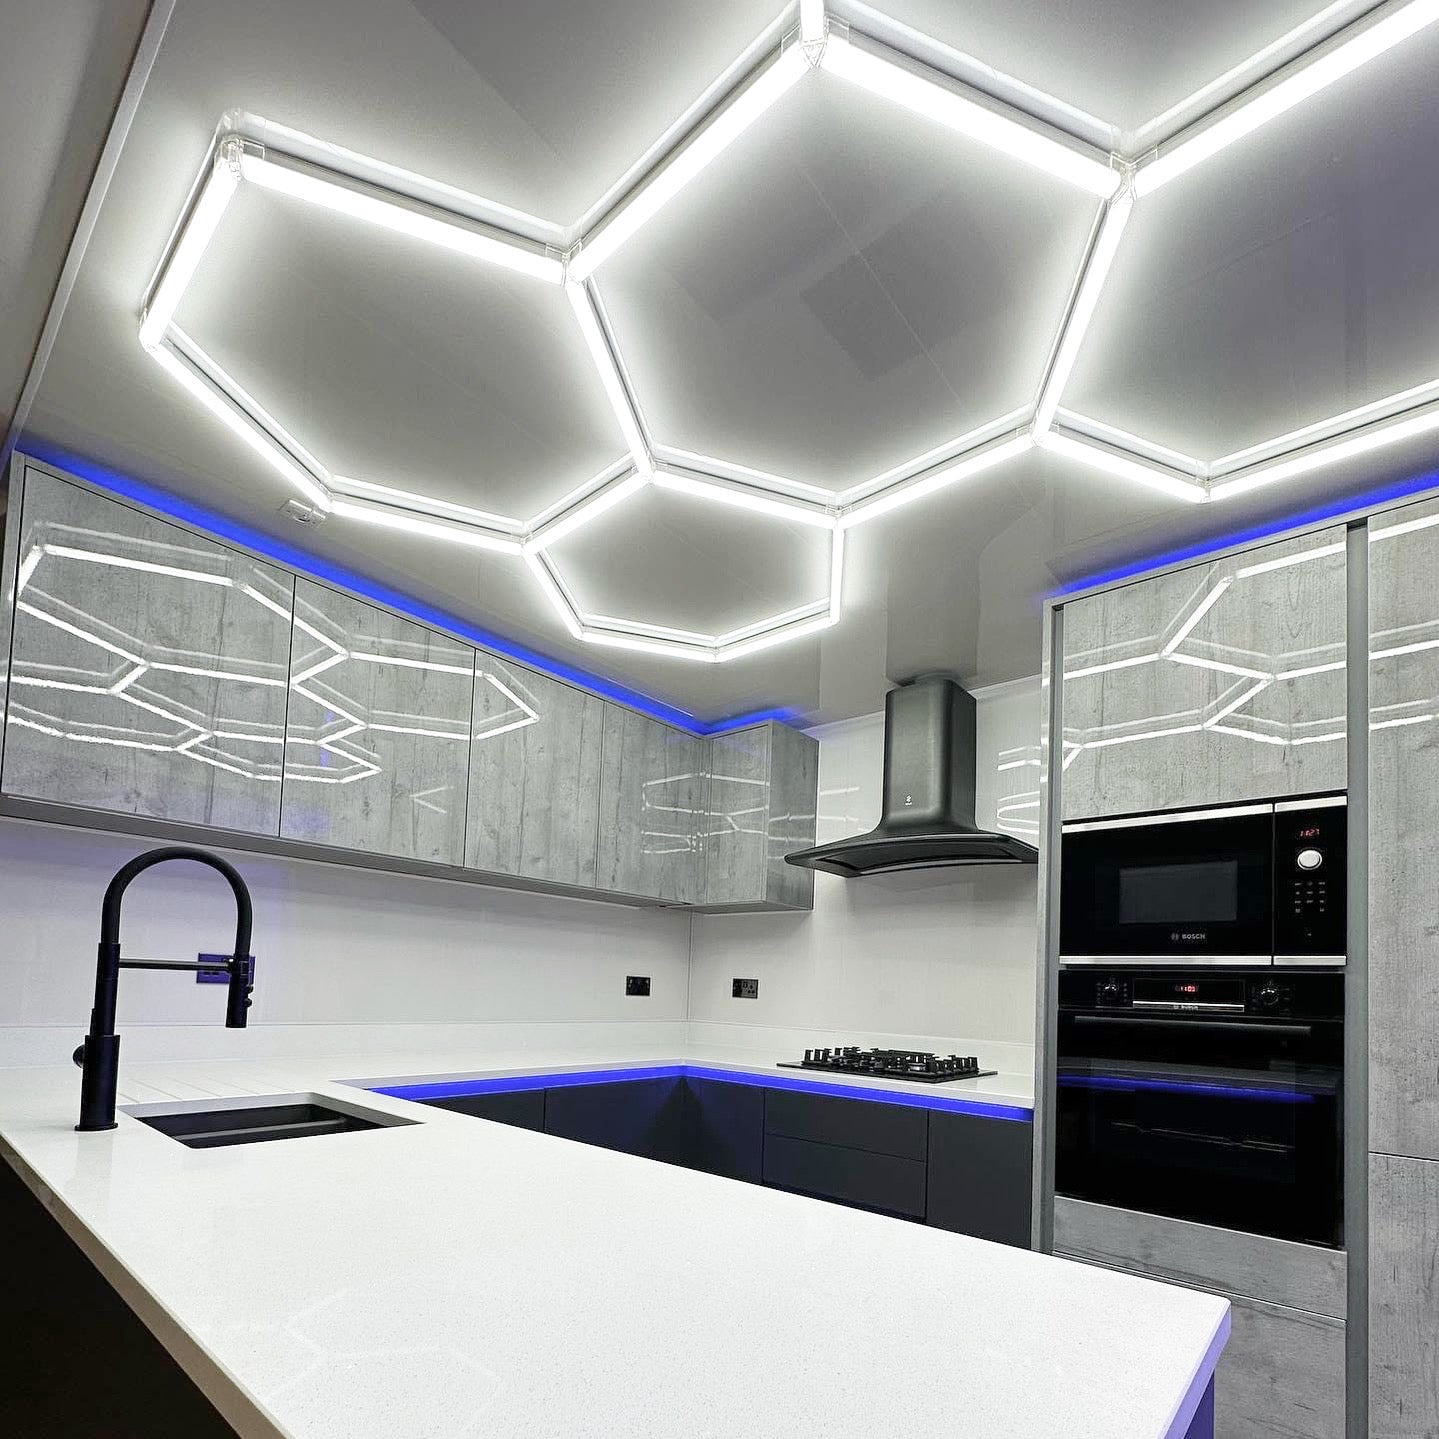 Hexagon lighting in modern kitchen